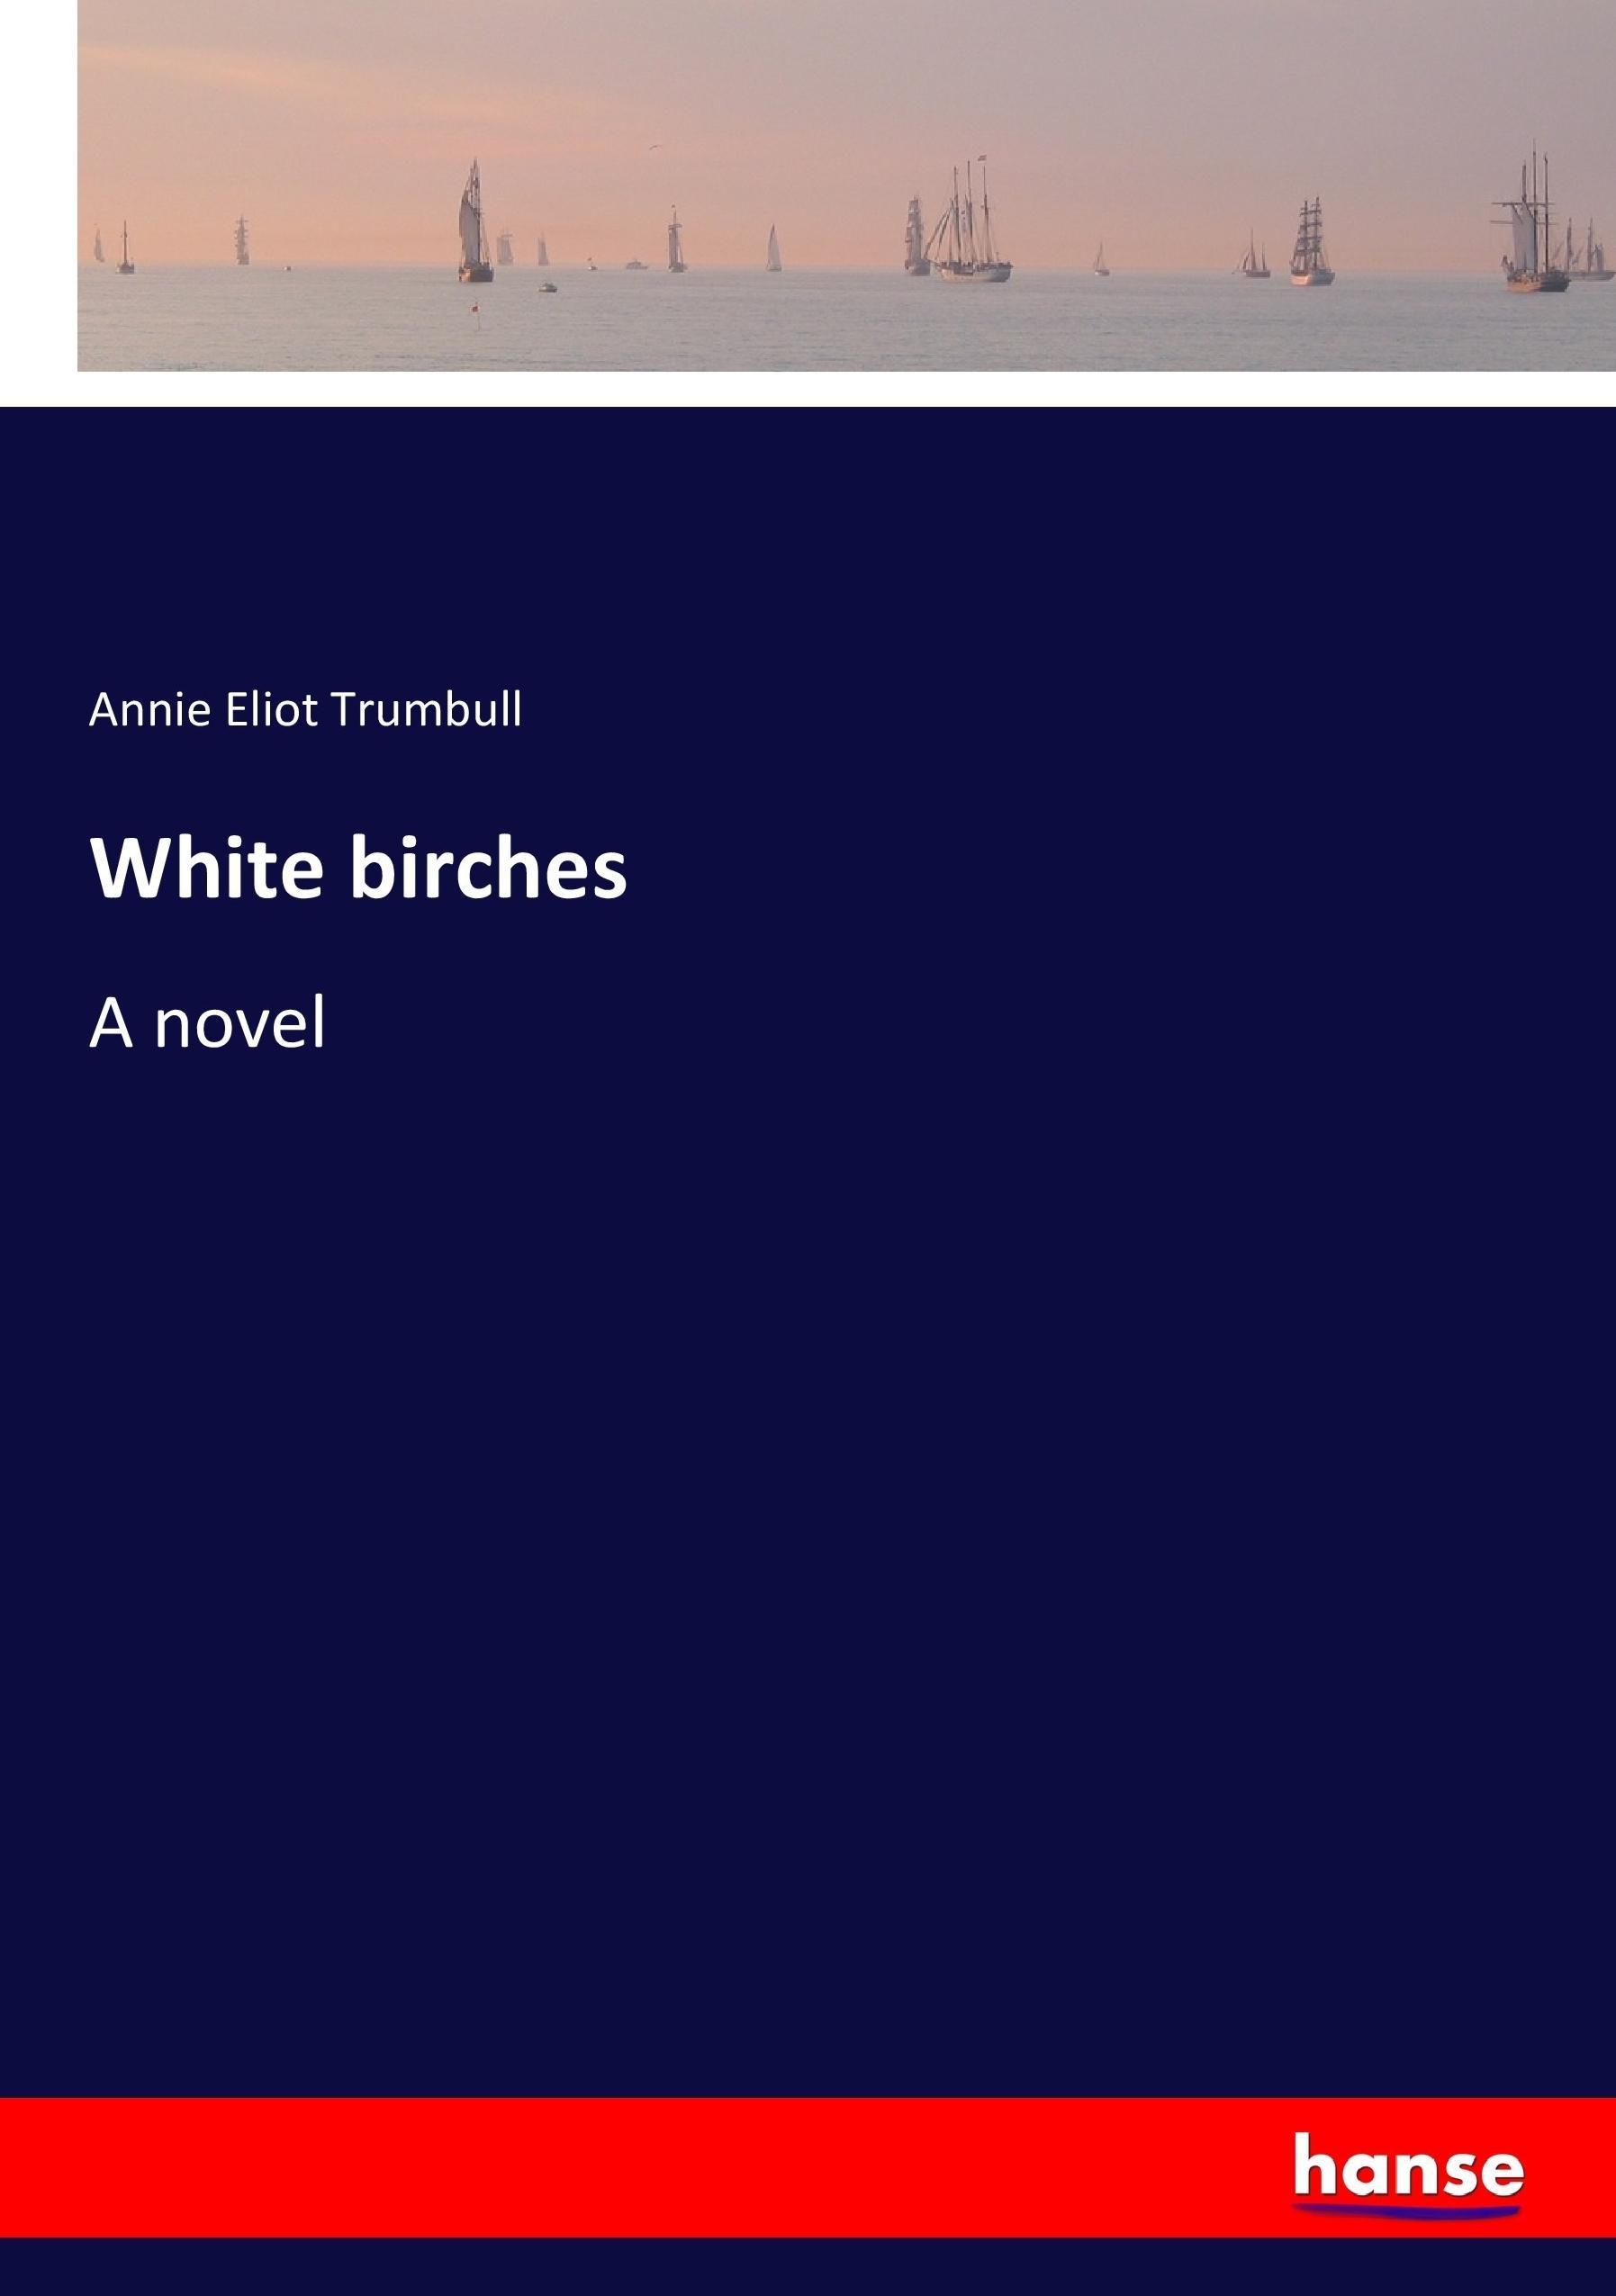 White birches | A novel | Annie Eliot Trumbull | Taschenbuch | Paperback | 368 S. | Englisch | 2017 | hansebooks | EAN 9783337046590 - Trumbull, Annie Eliot